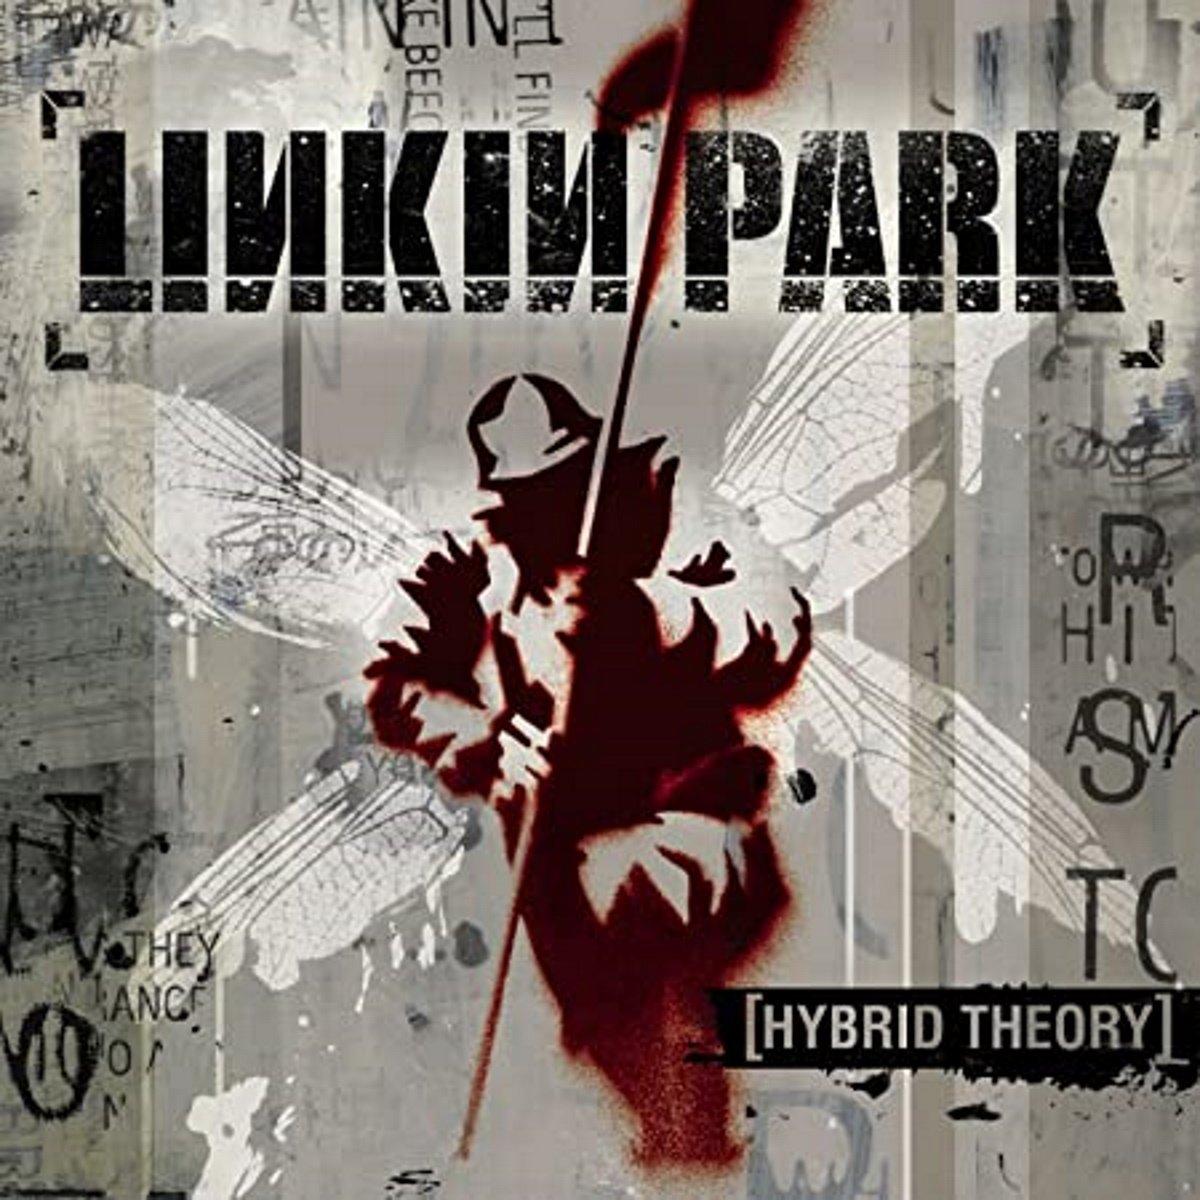 Historia de un suicidio: las canciones de Linkin Park que explican a Chester Bennington